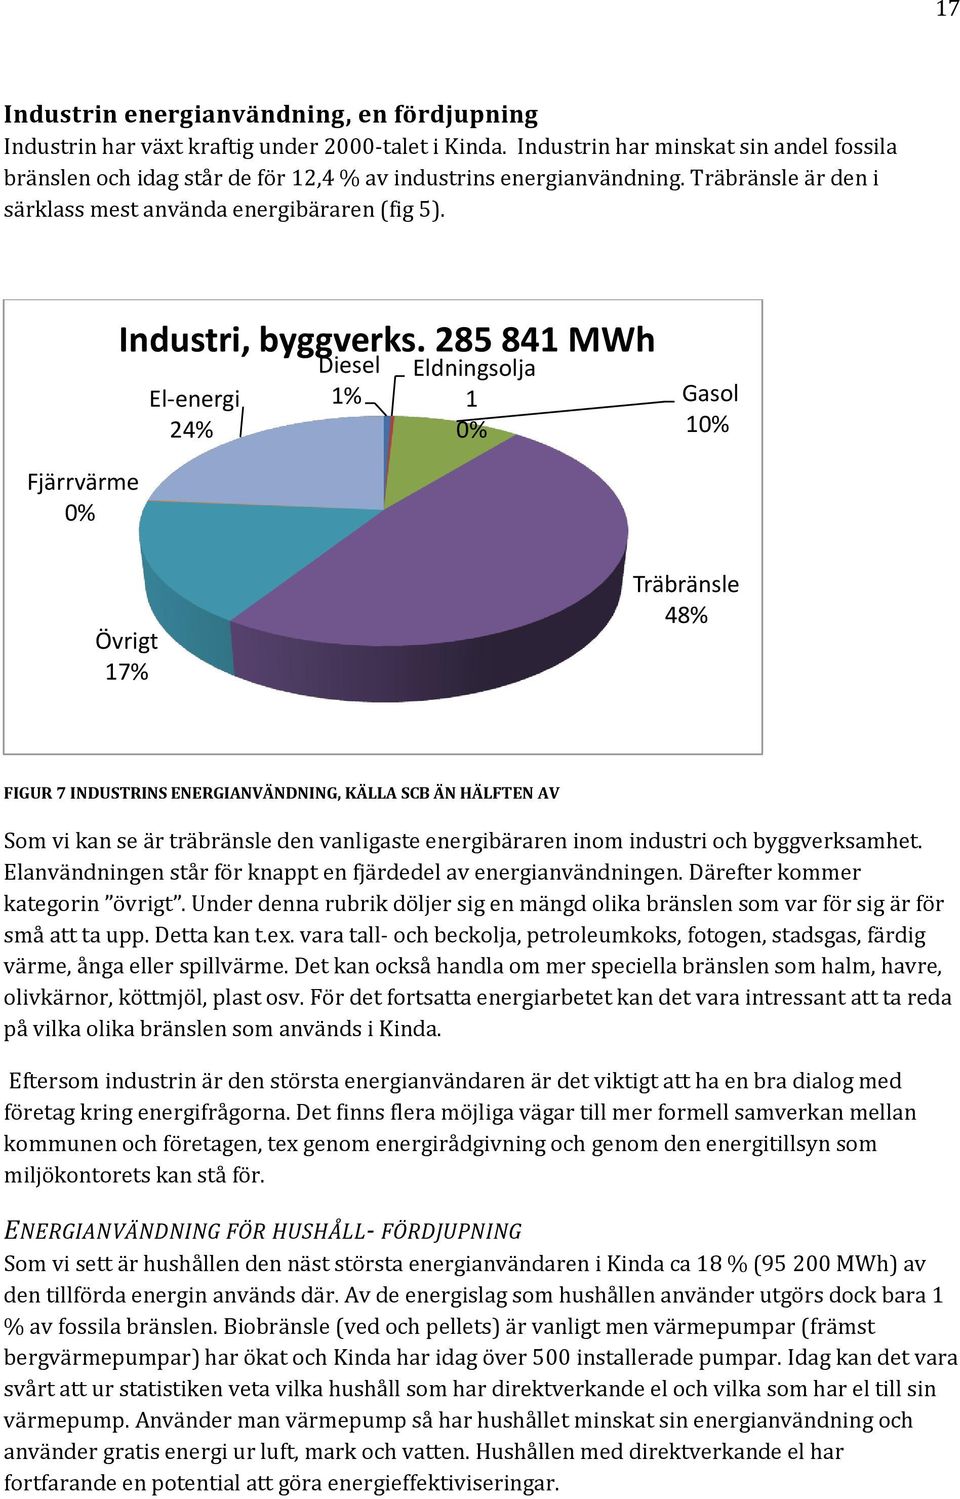 285 841 MWh El-energi 24% Diesel 1% Eldningsolja 1 0% Gasol 10% Fjärrvärme 0% Övrigt 17% Träbränsle 48% FIGUR 7 INDUSTRINS ENERGIANVÄNDNING, KÄLLA SCB ÄN HÄLFTEN AV Som vi kan se är träbränsle den